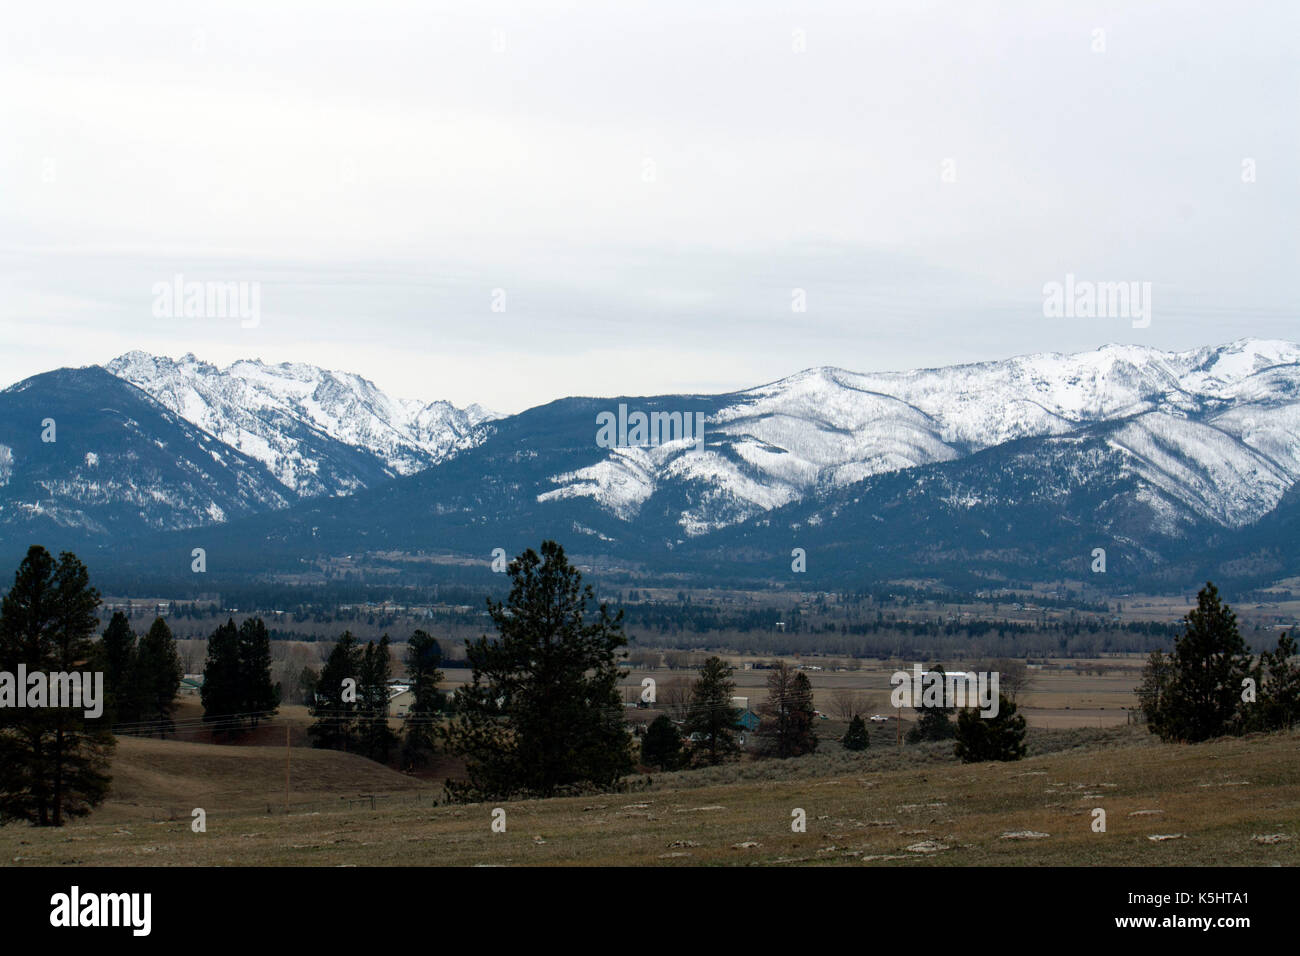 Schneebedeckte Berge mitten im Winter. Abschnitt der Rocky Mountains in Bitterroot Valley, Montana. Nordamerika, USA. Stockfoto